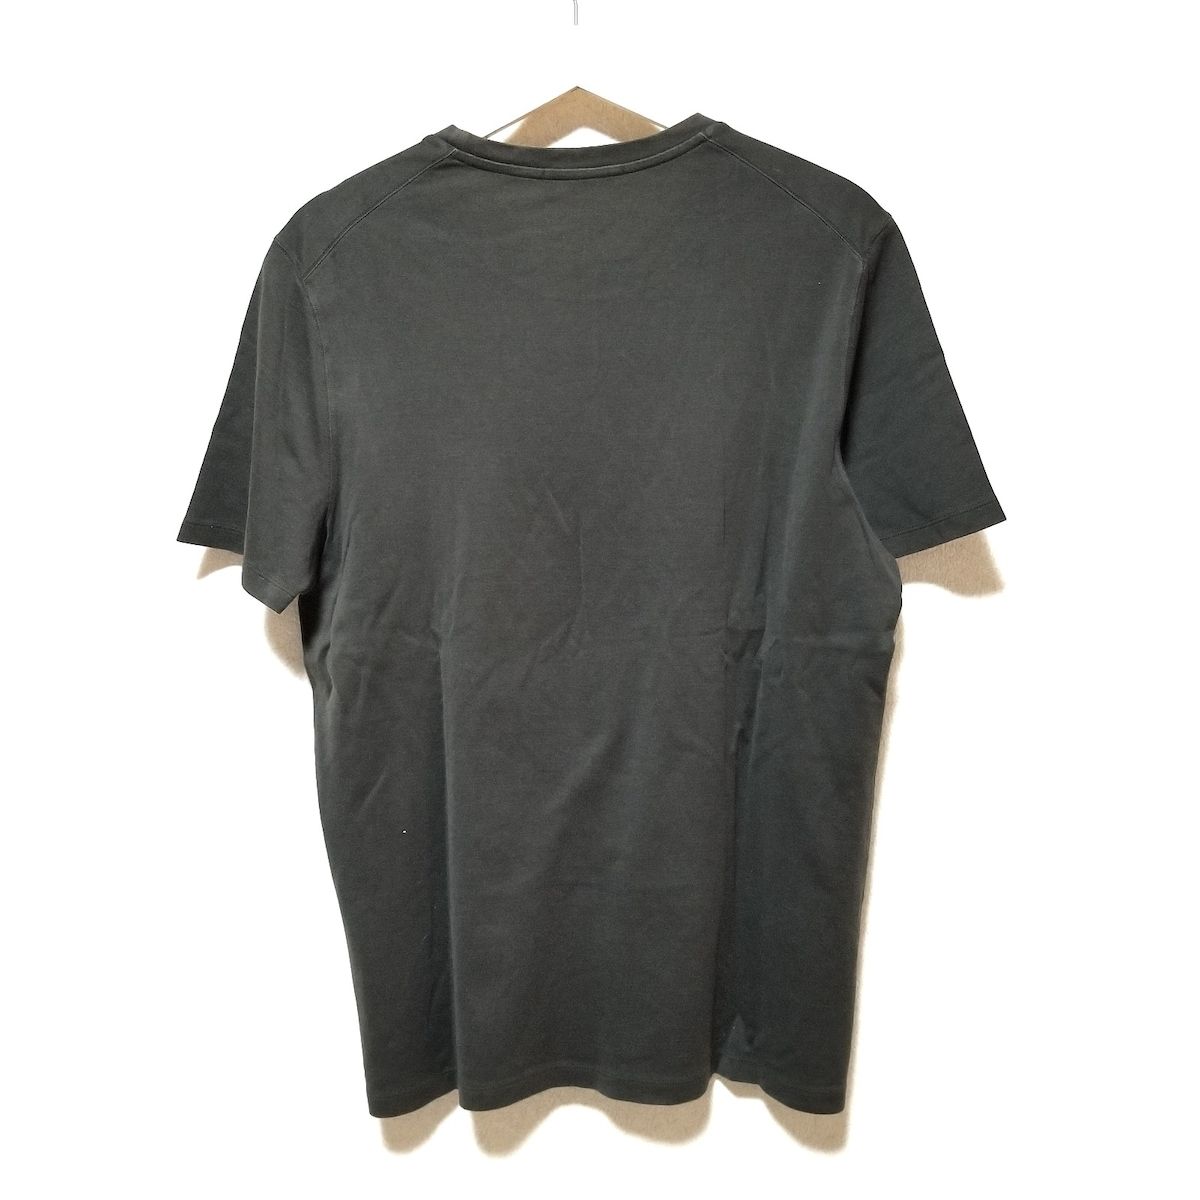 LOUIS VUITTON(ルイヴィトン) 半袖Tシャツ サイズL レディース美品 - ダークブラウン クルーネック - メルカリ